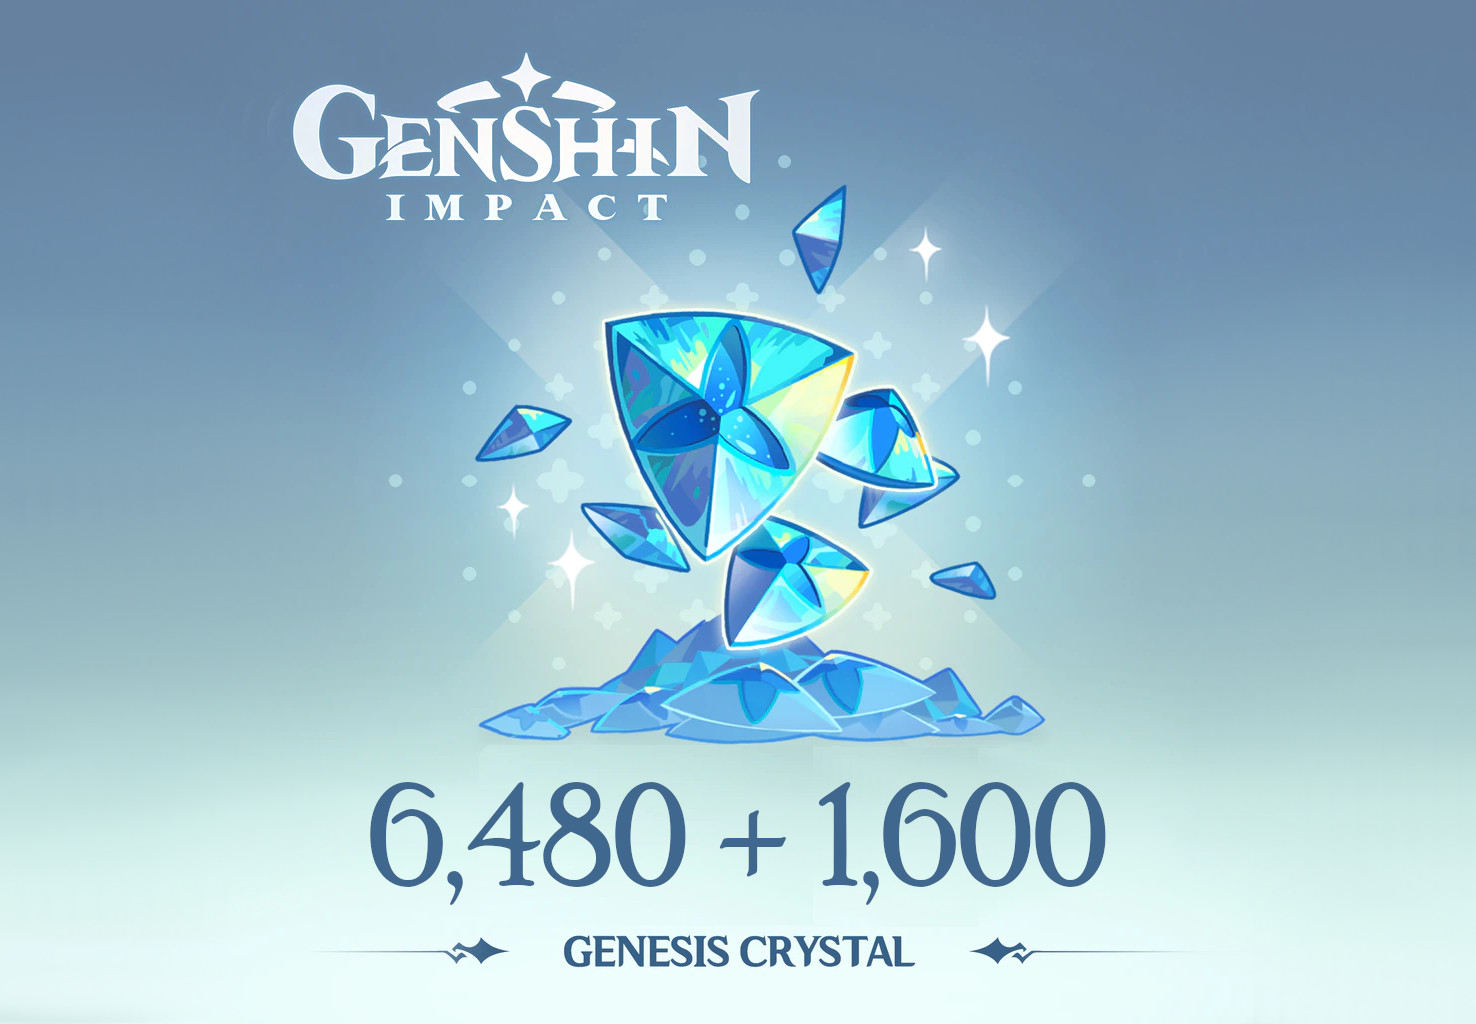 Genshin Impact - 6,480 + 1,600 Genesis Crystals Reidos Voucher (107.29$)